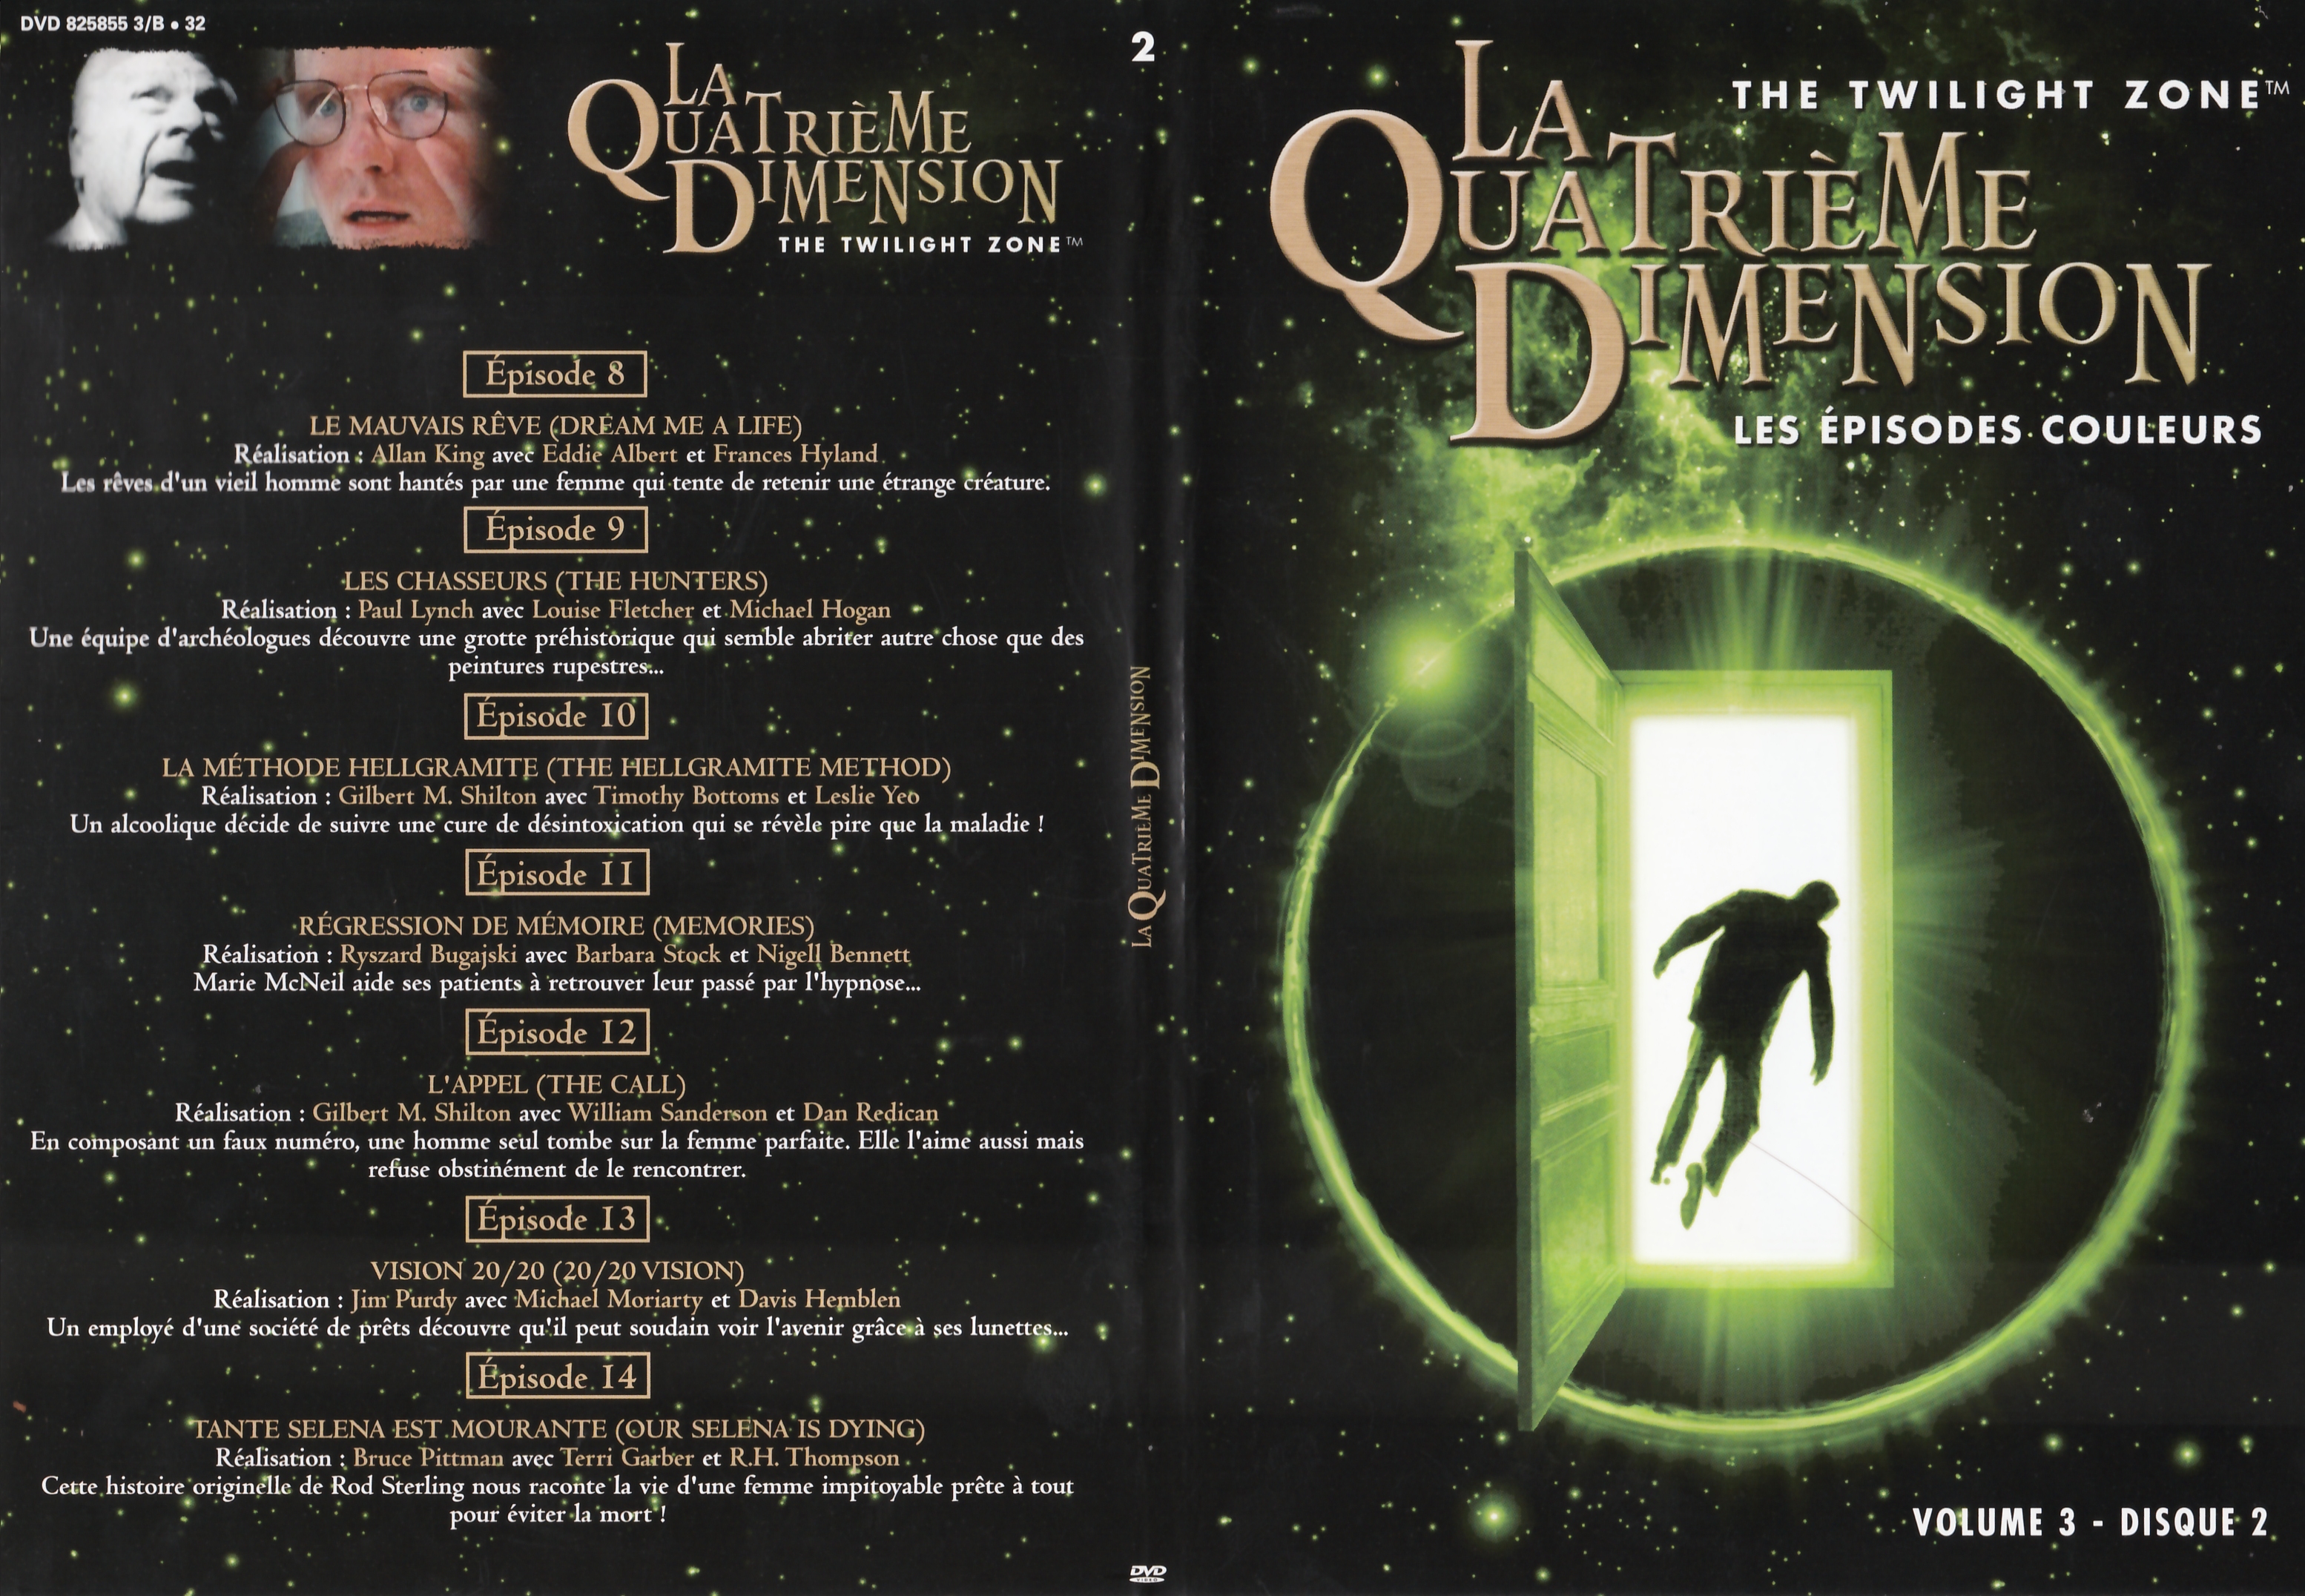 Jaquette DVD La quatrime dimension - Episodes couleurs vol 3 DVD 2